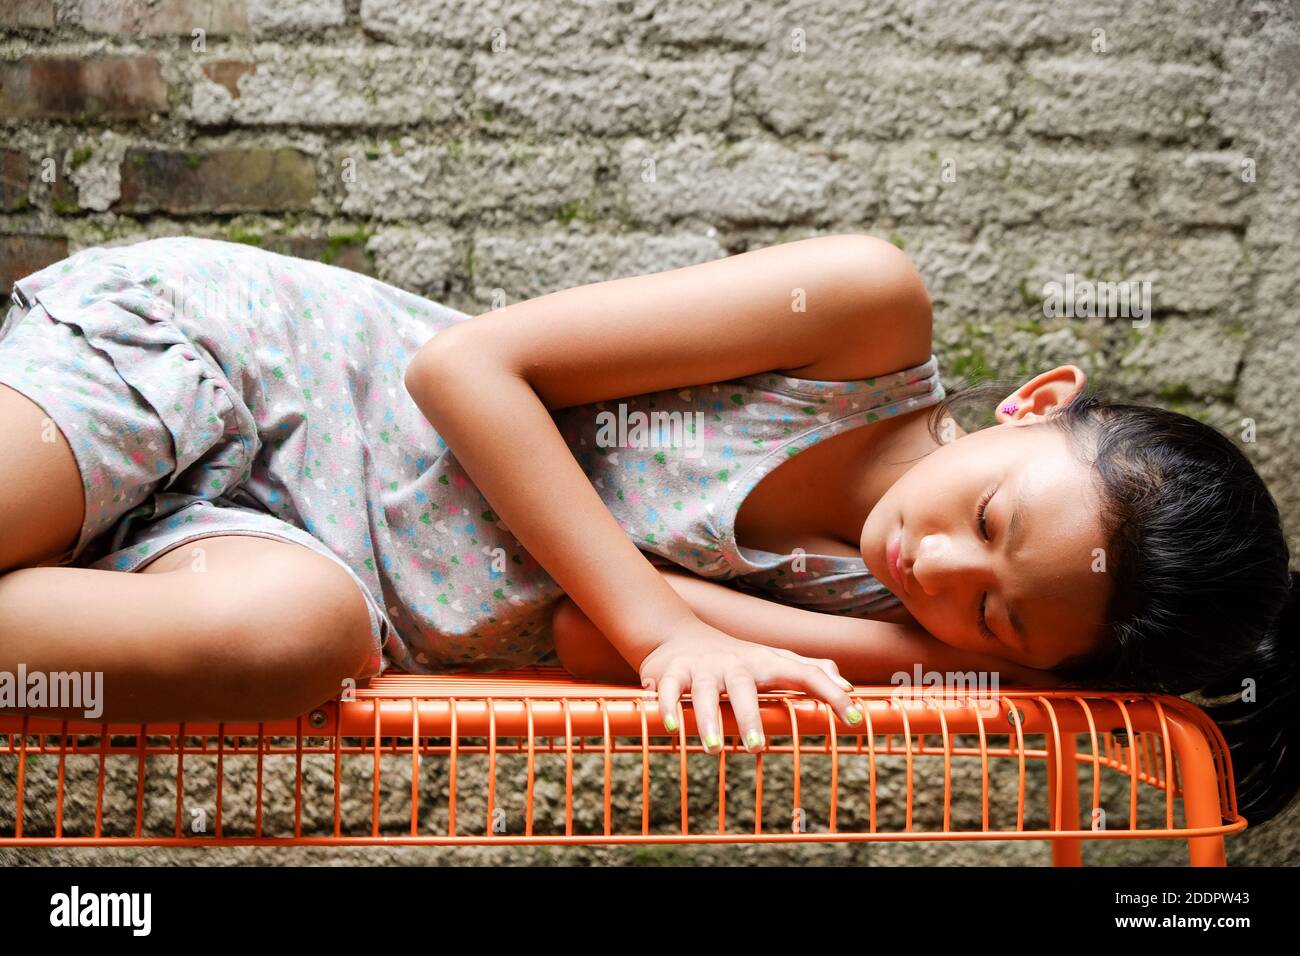 Grupo étnico del sudeste asiático adolescente acostada en un banco, tomando el sol por la mañana en casa Foto de stock